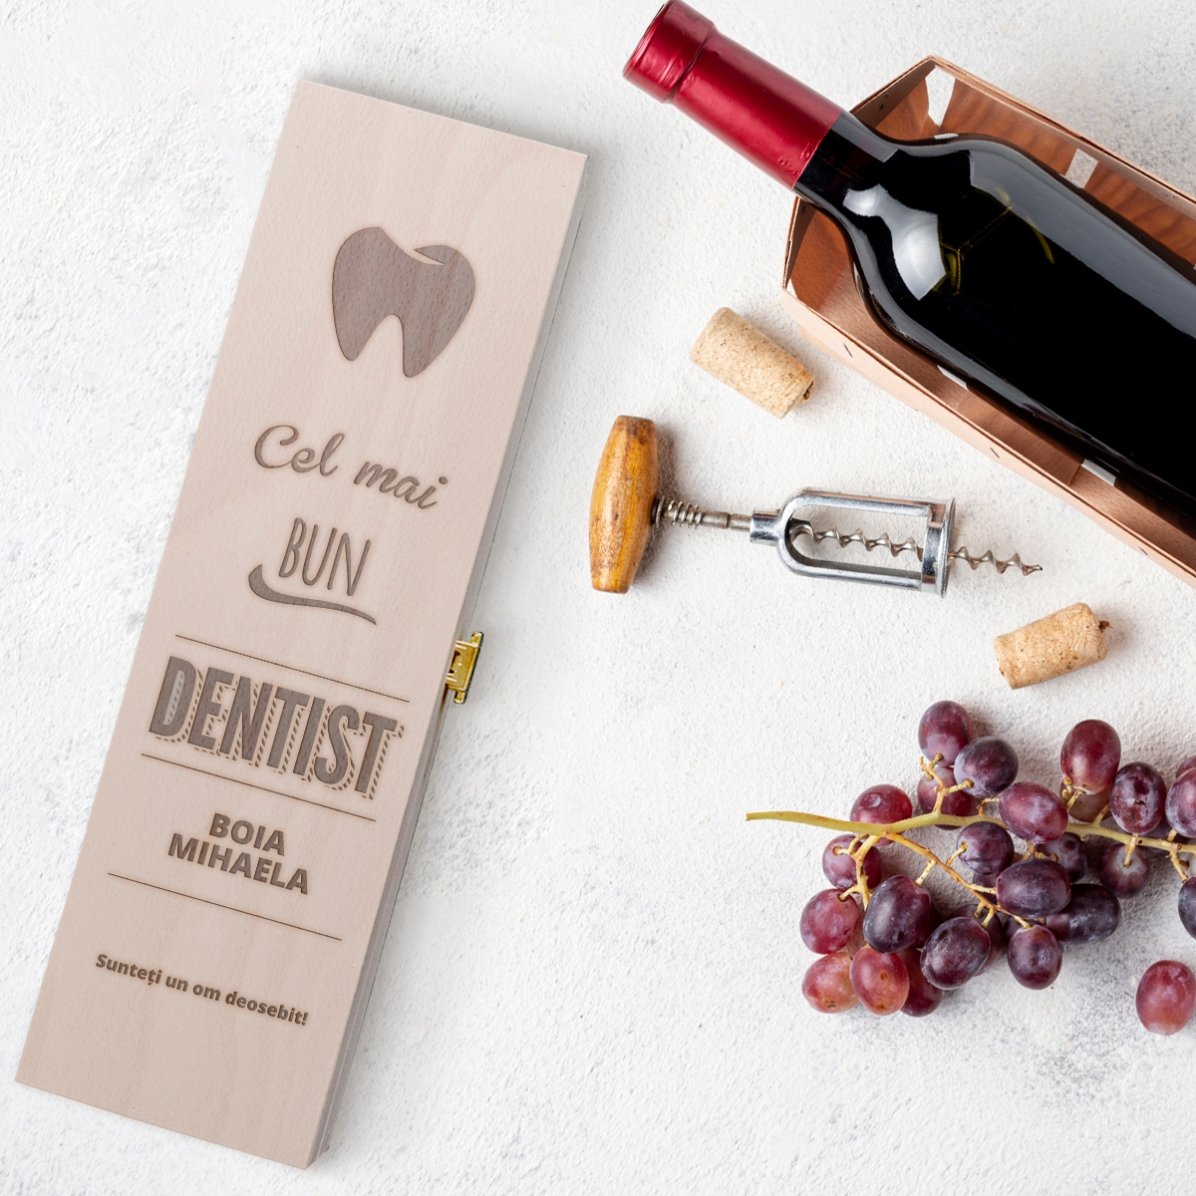 Cutie de vin personalizată - Cel mai bun dentist